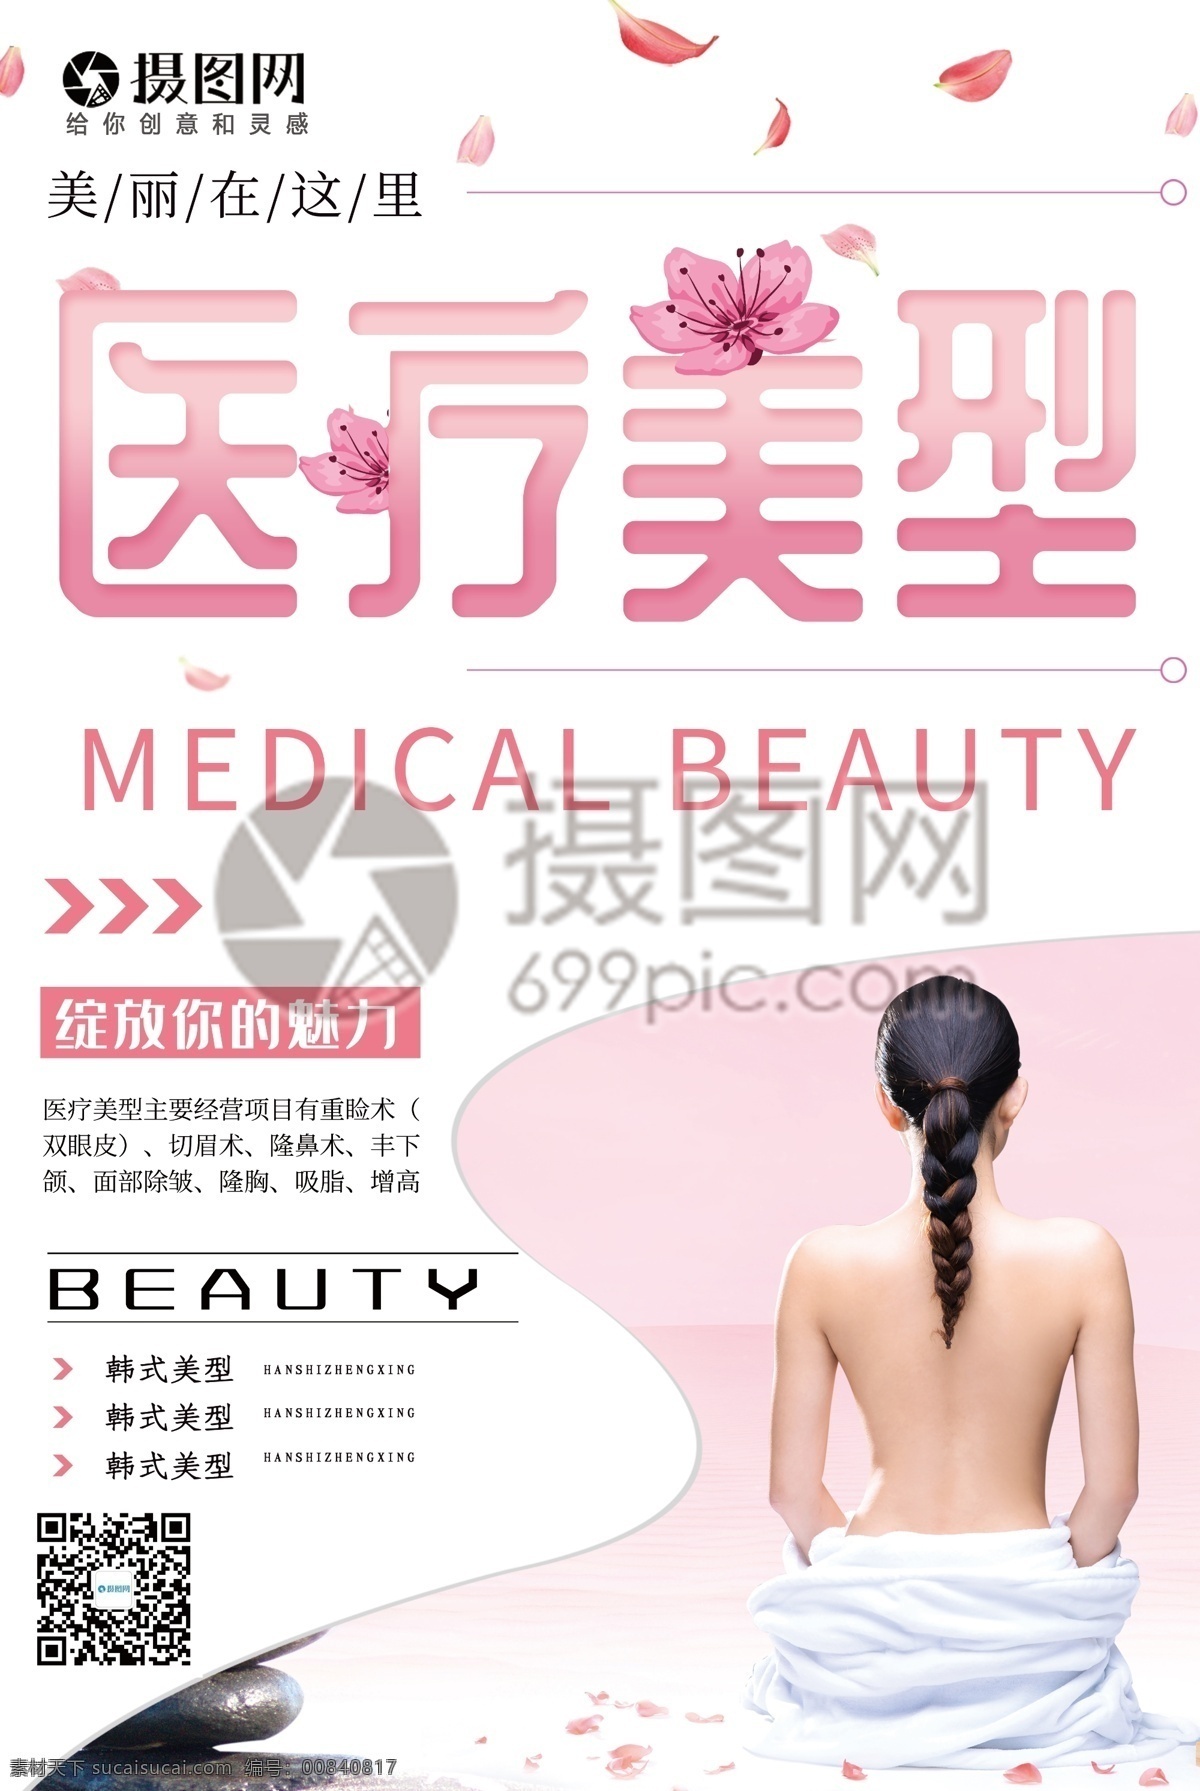 粉色 唯美 花瓣 美女 医疗 美 型 宣传海报 医疗美型 韩式美型 宣传 促销 海报 美容养生 美容 医疗美容